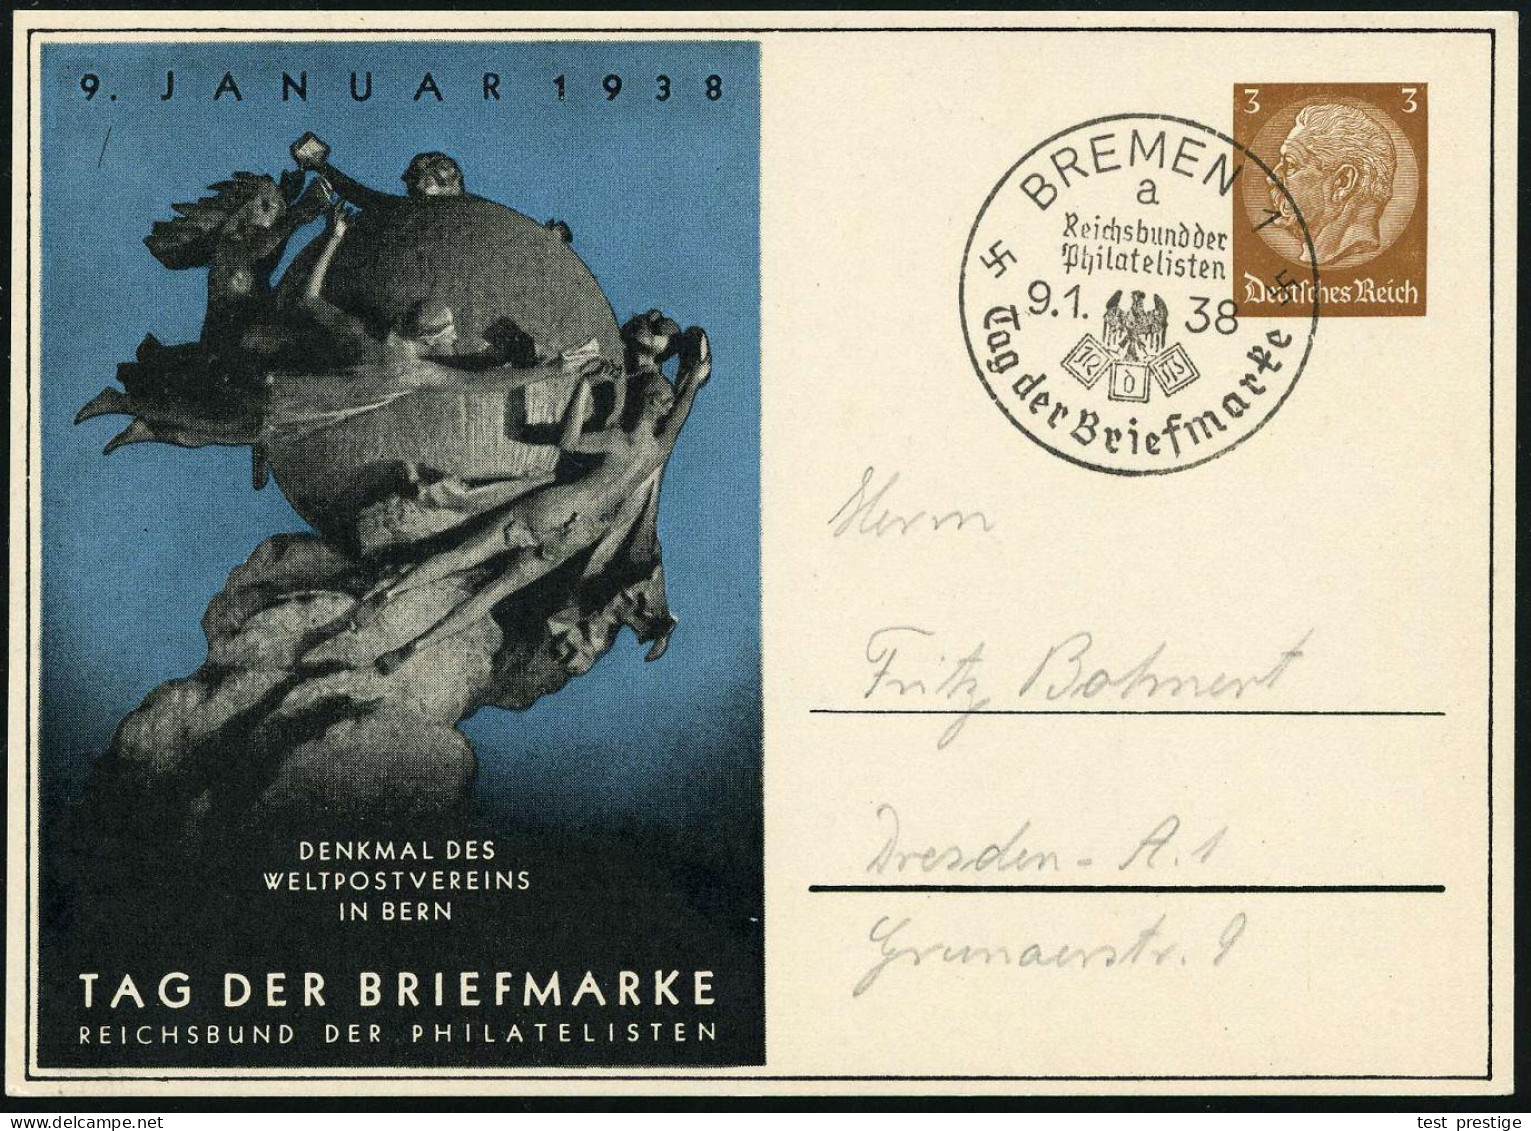 BREMEN 1/ A/ ..Tag Der Briefmarke 1938 (9.1.) SSt Auf PP 3 Pf. Hindenbg. , Braun: TAG DER BRIEFMARKE = UPU-Denkmal Bern, - WPV (Weltpostverein)